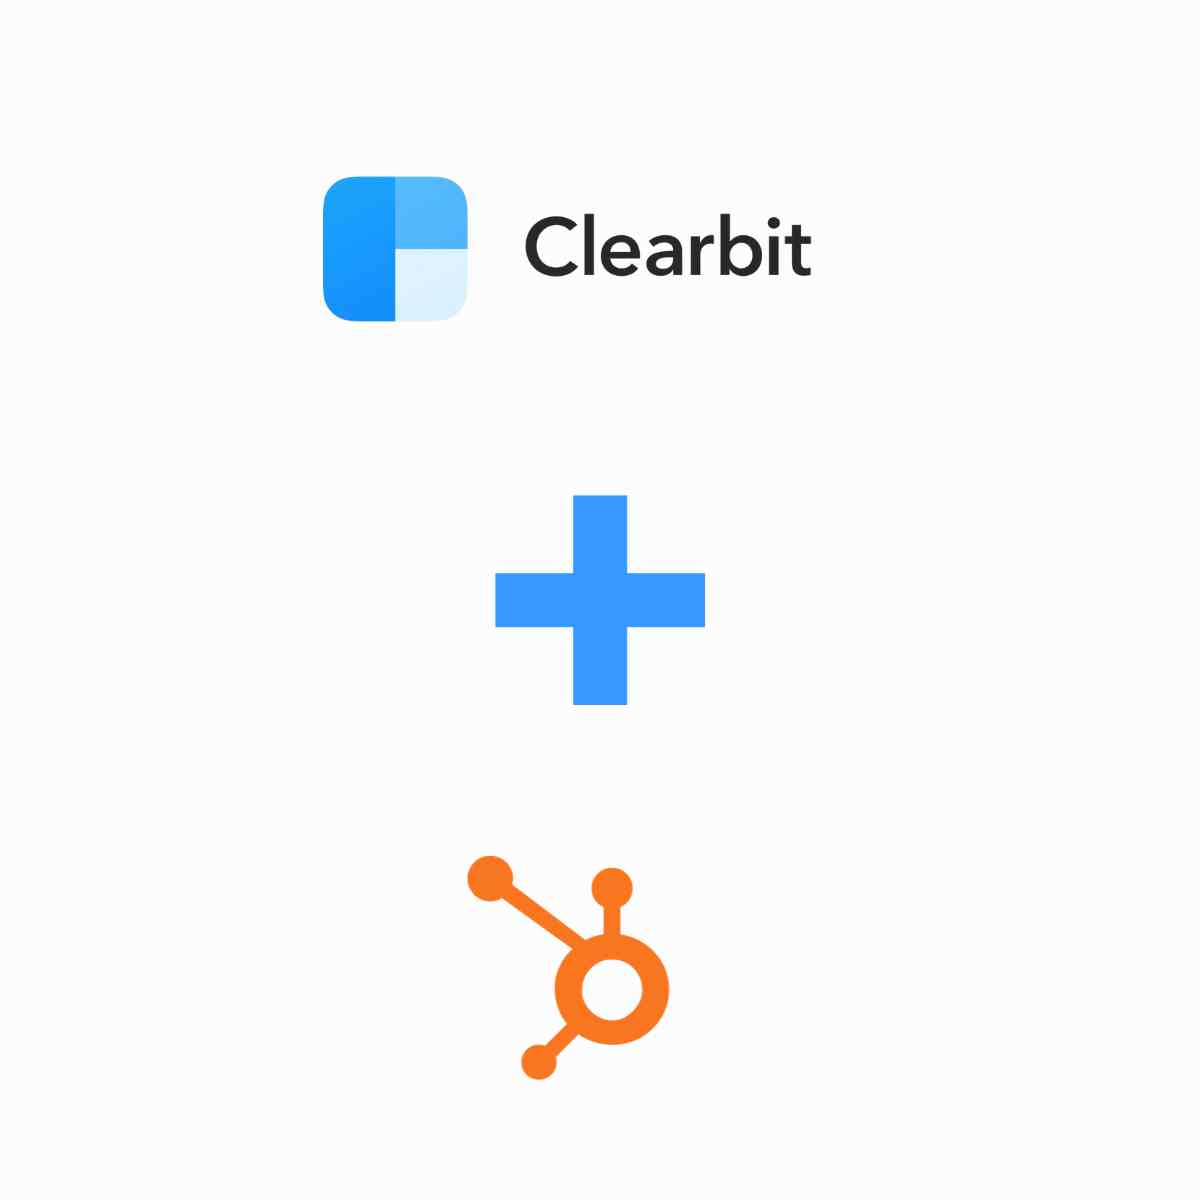 HubSpot Acquiert Clearbit : Une Acquisition Stratégique aux Multiples Avantages